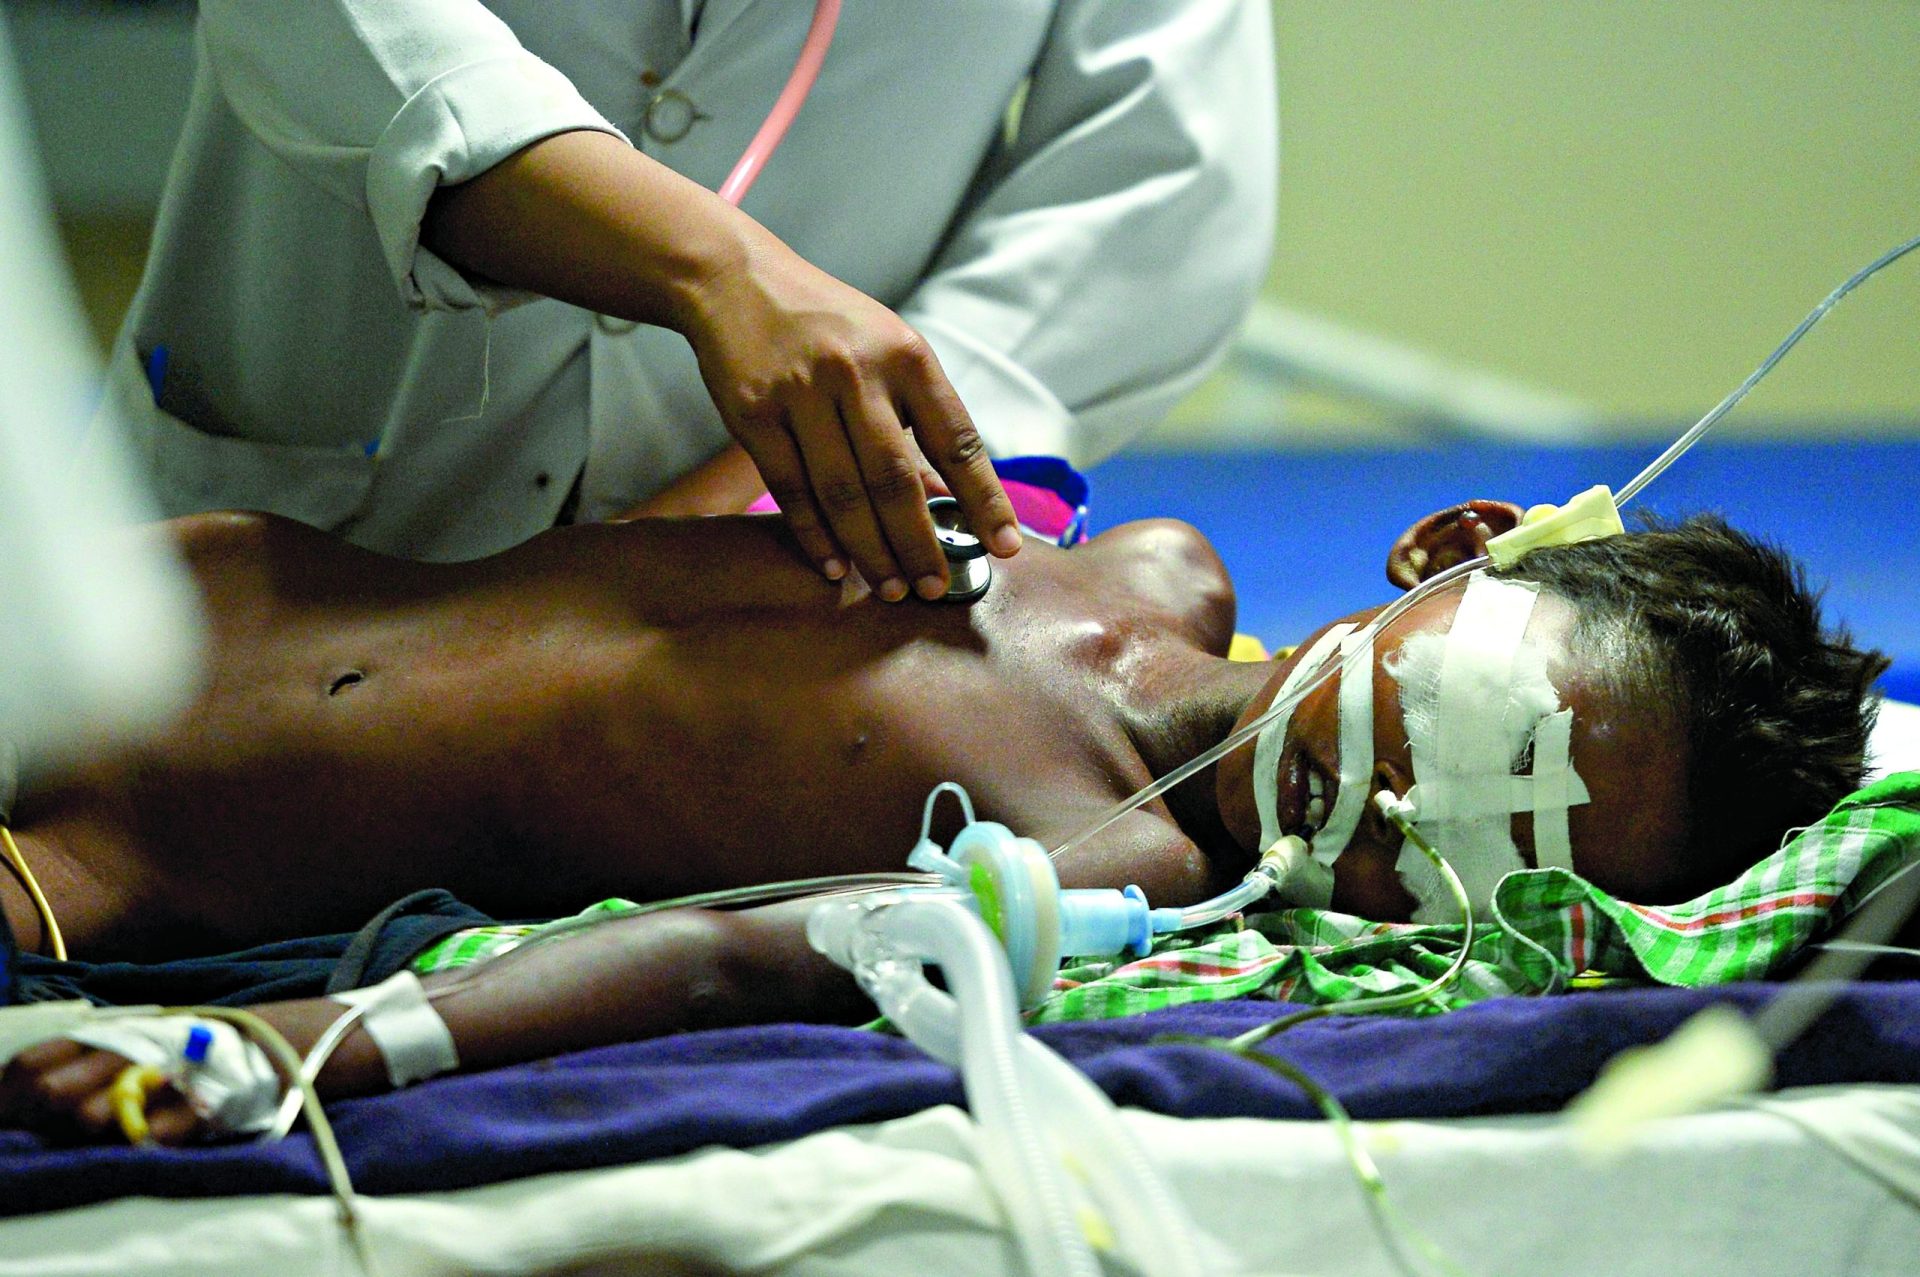 Índia. Morrem 64 crianças em hospital por falta de oxigénio